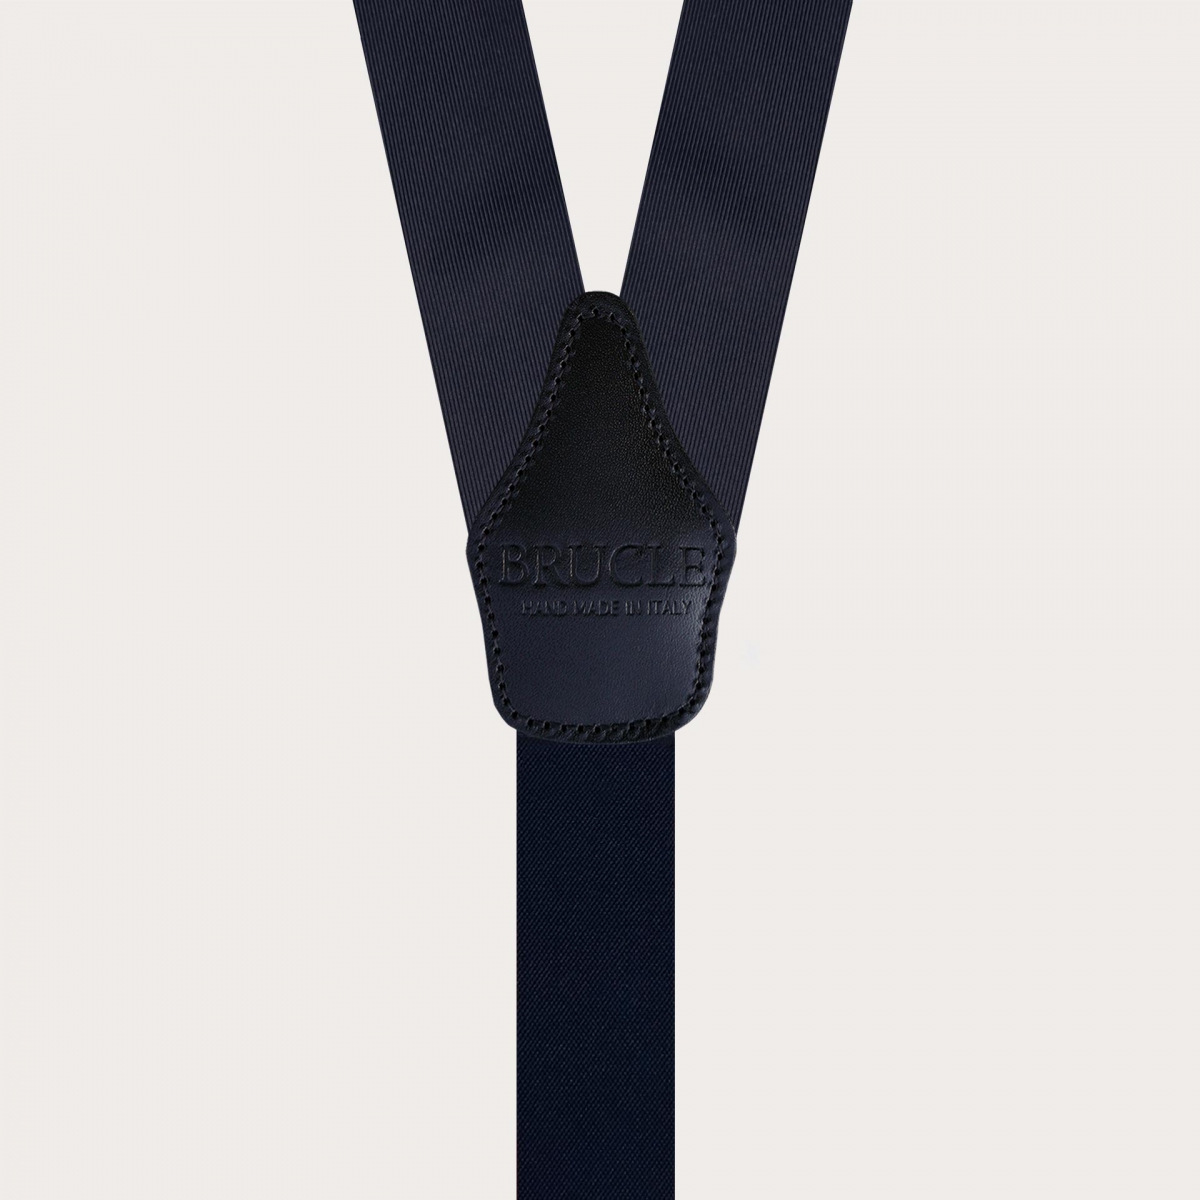 Formal Y-shape jacquard silk suspenders, navy blue, nickel free